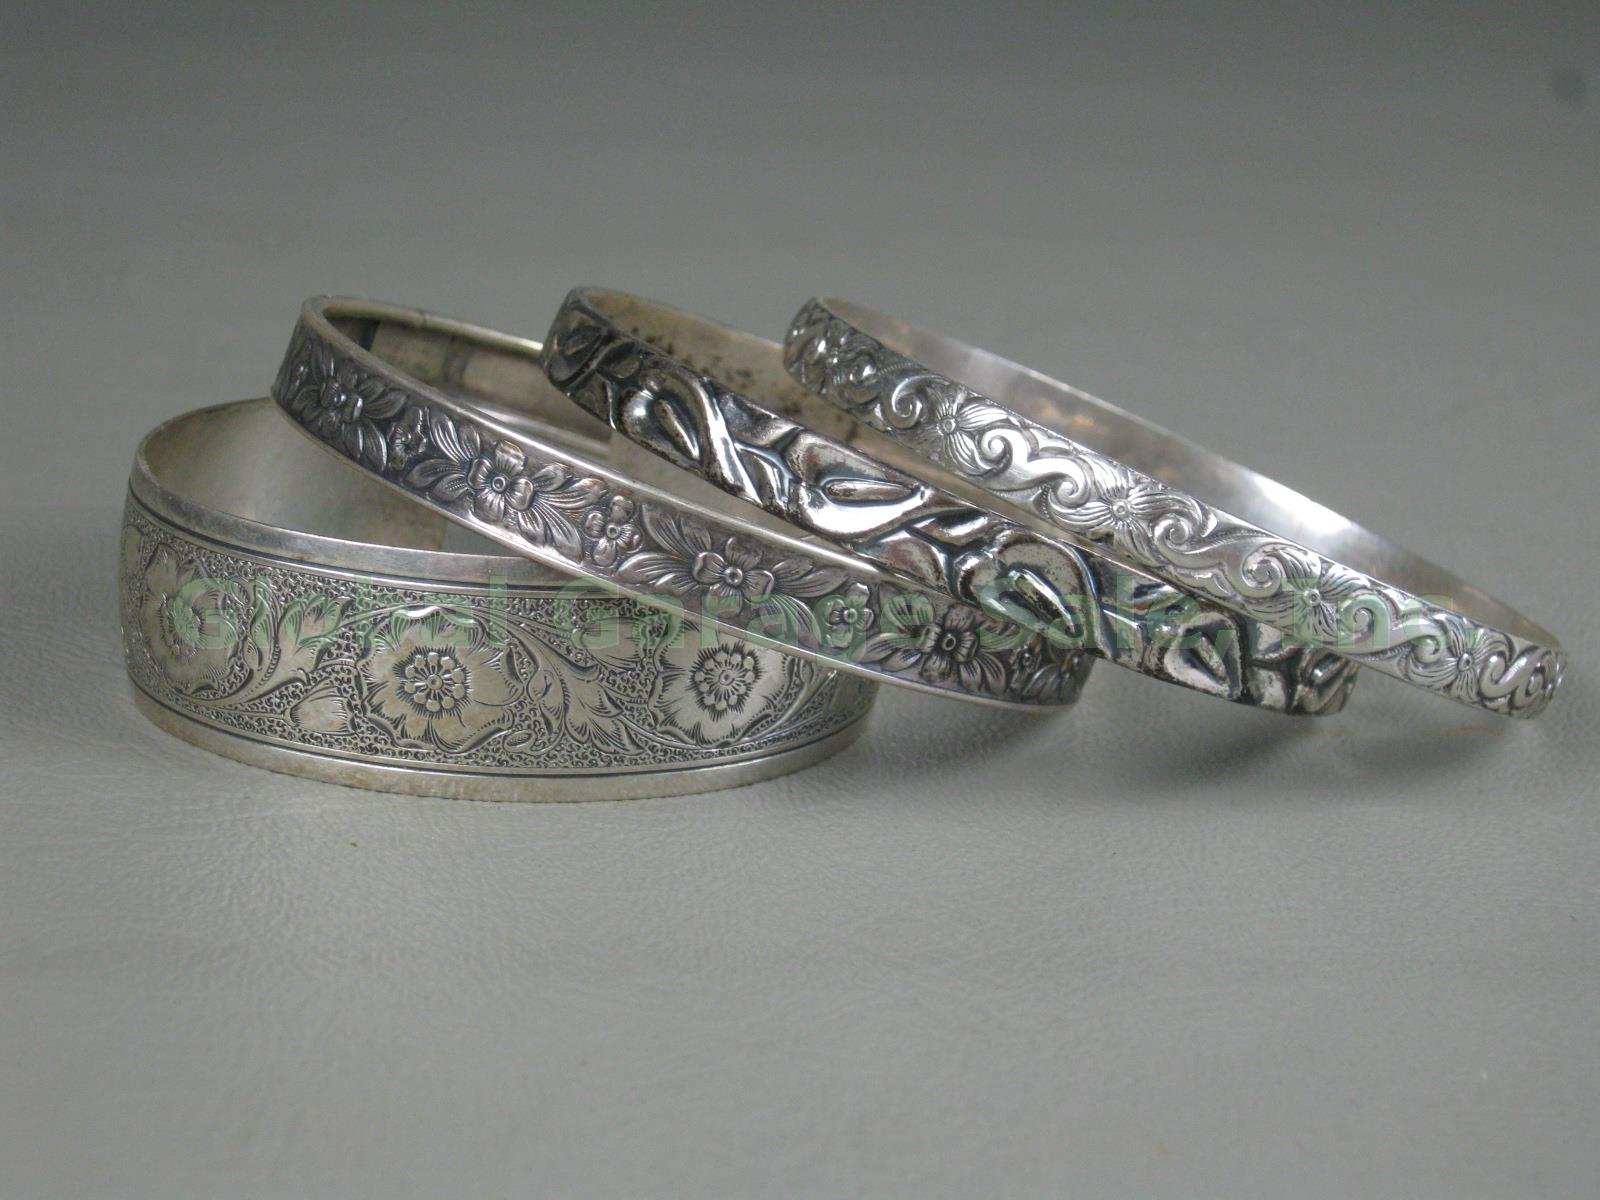 4 Vtg Danecraft Sterling Silver Bracelets Lot Bangle Cuff Floral Flowers Leaves